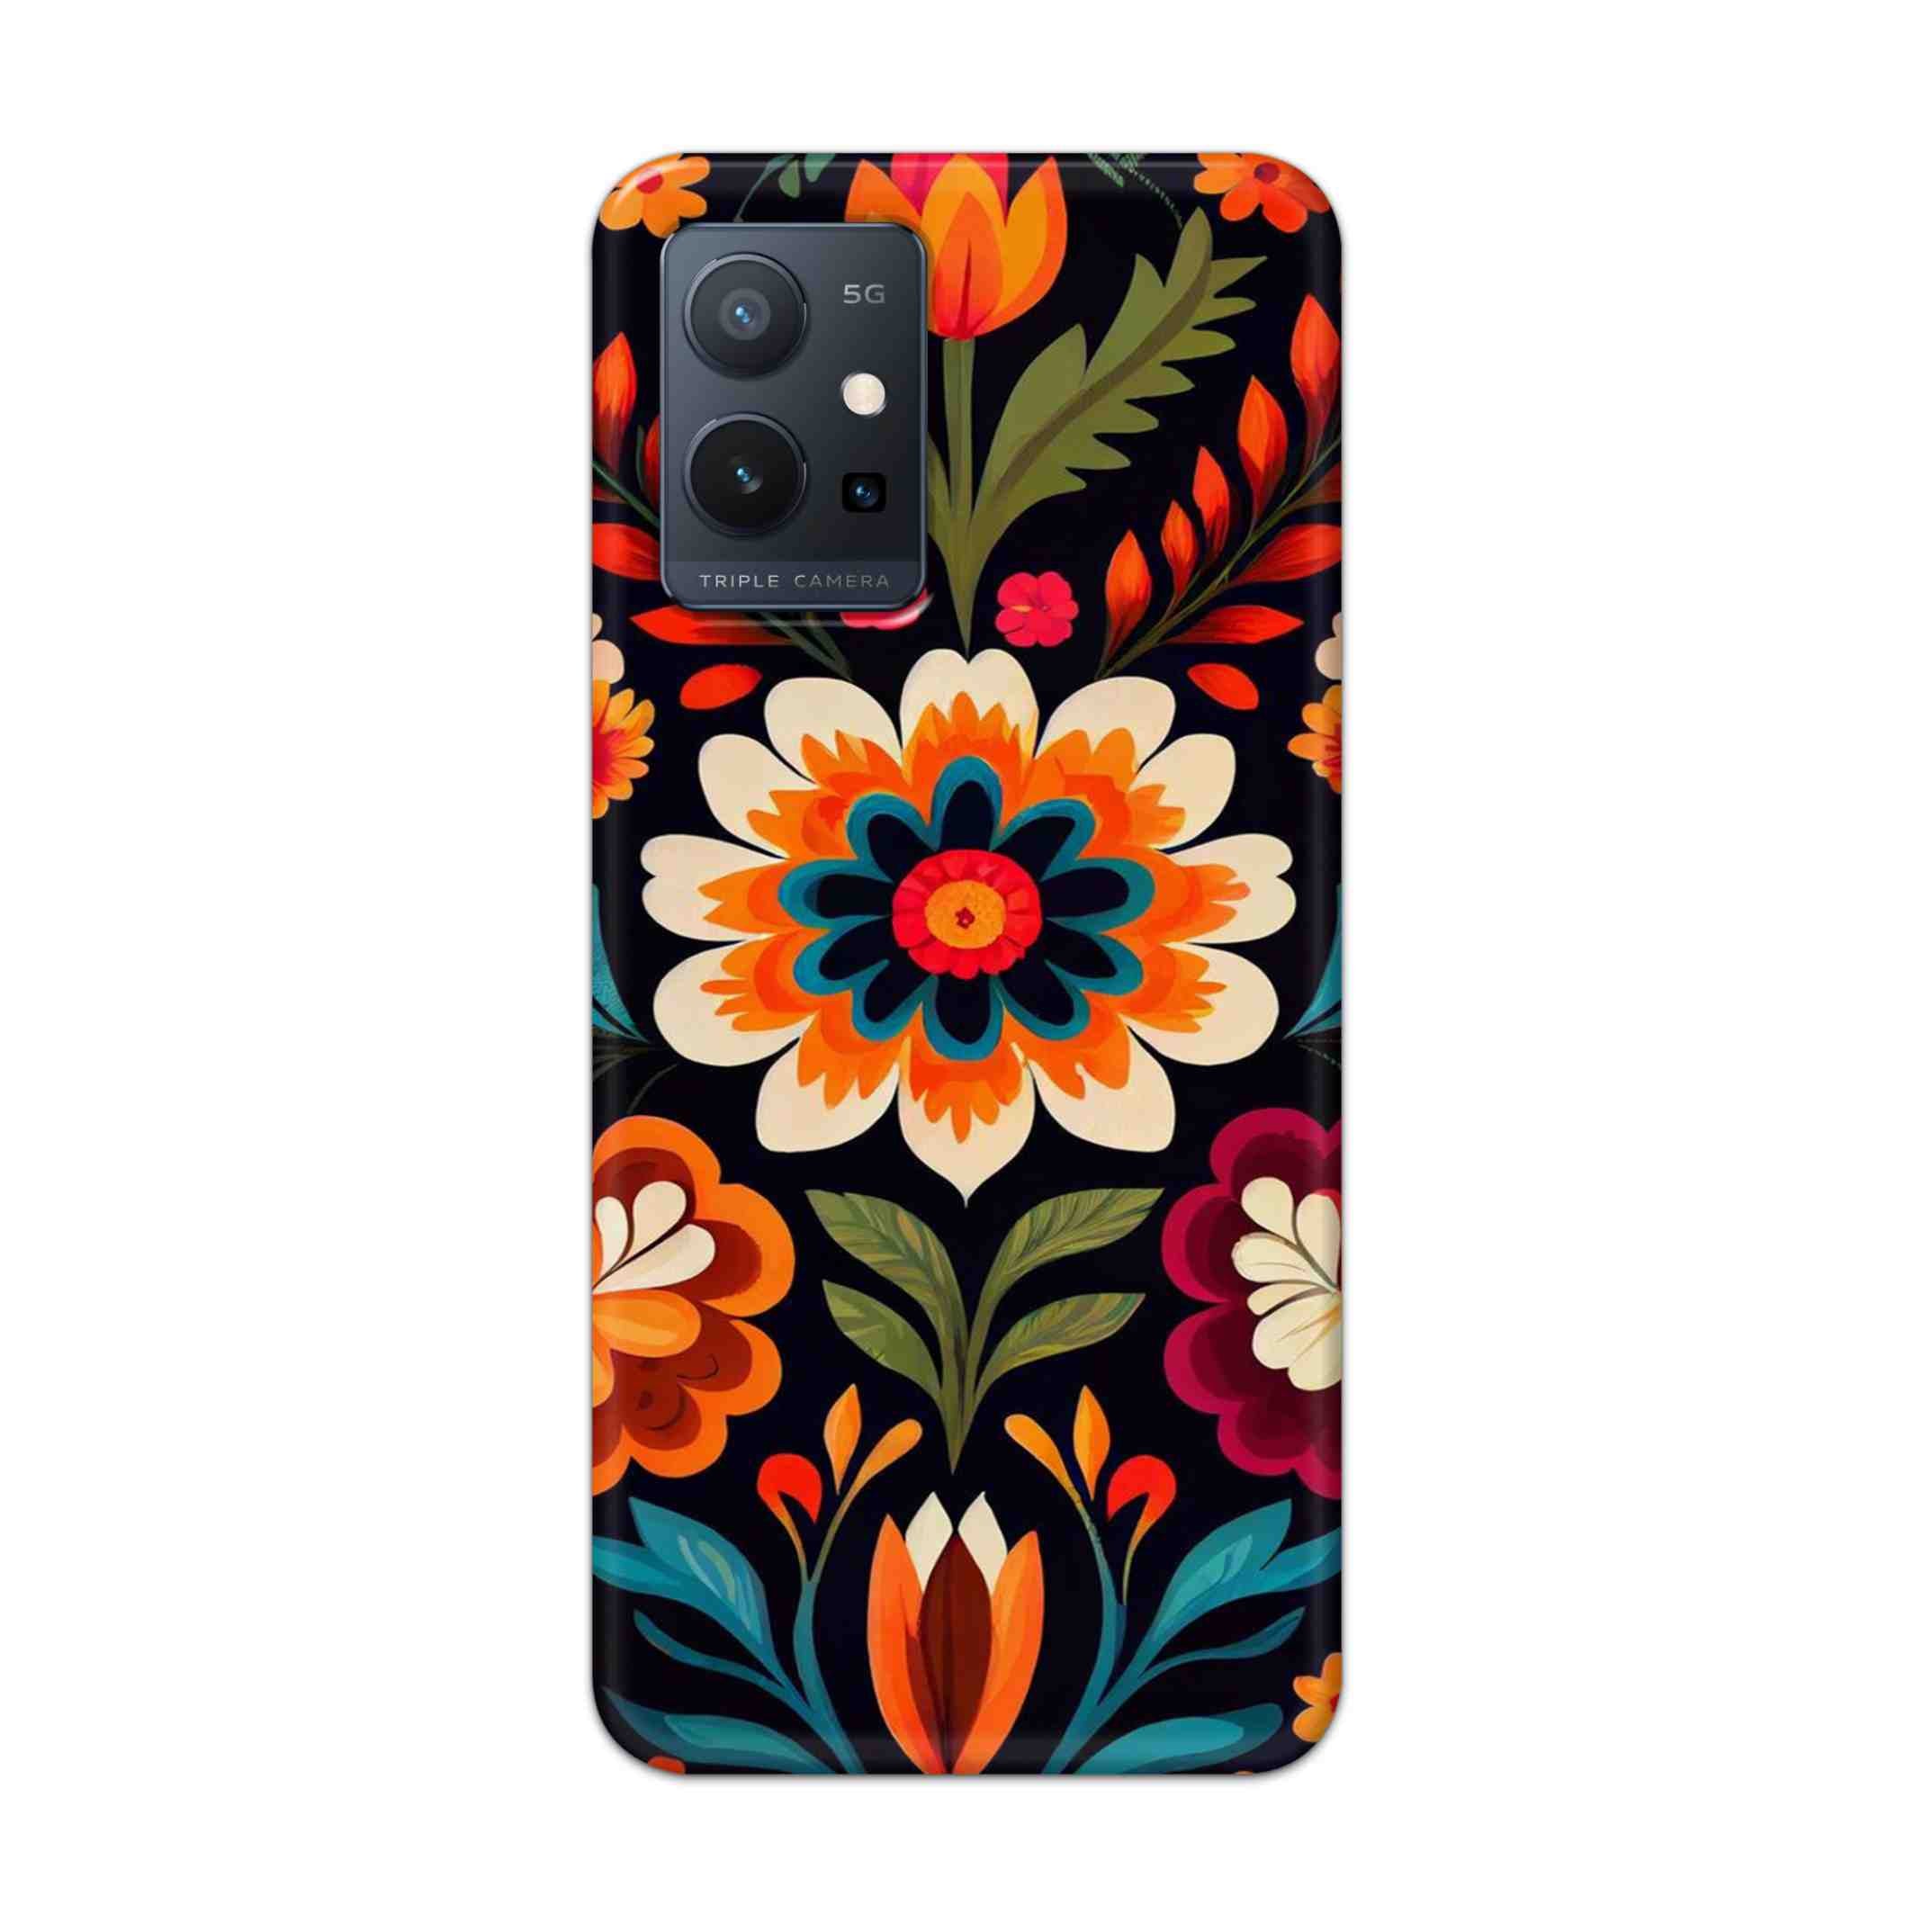 Buy Flower Hard Back Mobile Phone Case Cover For Vivo T1 5G Online